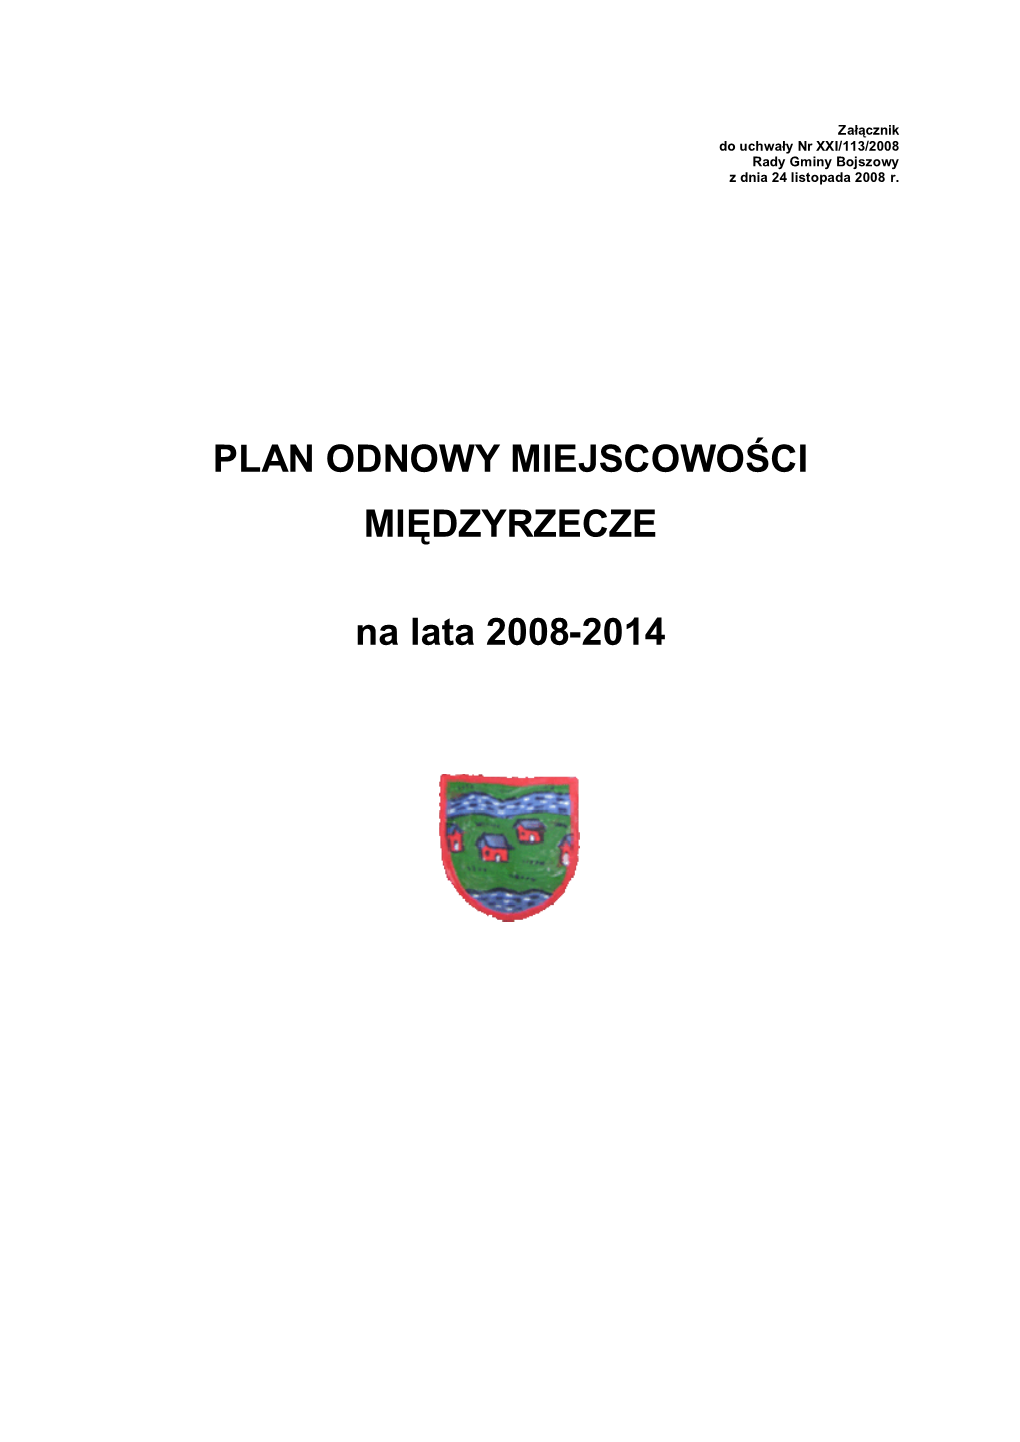 Plan Odnowy Miejscowosci